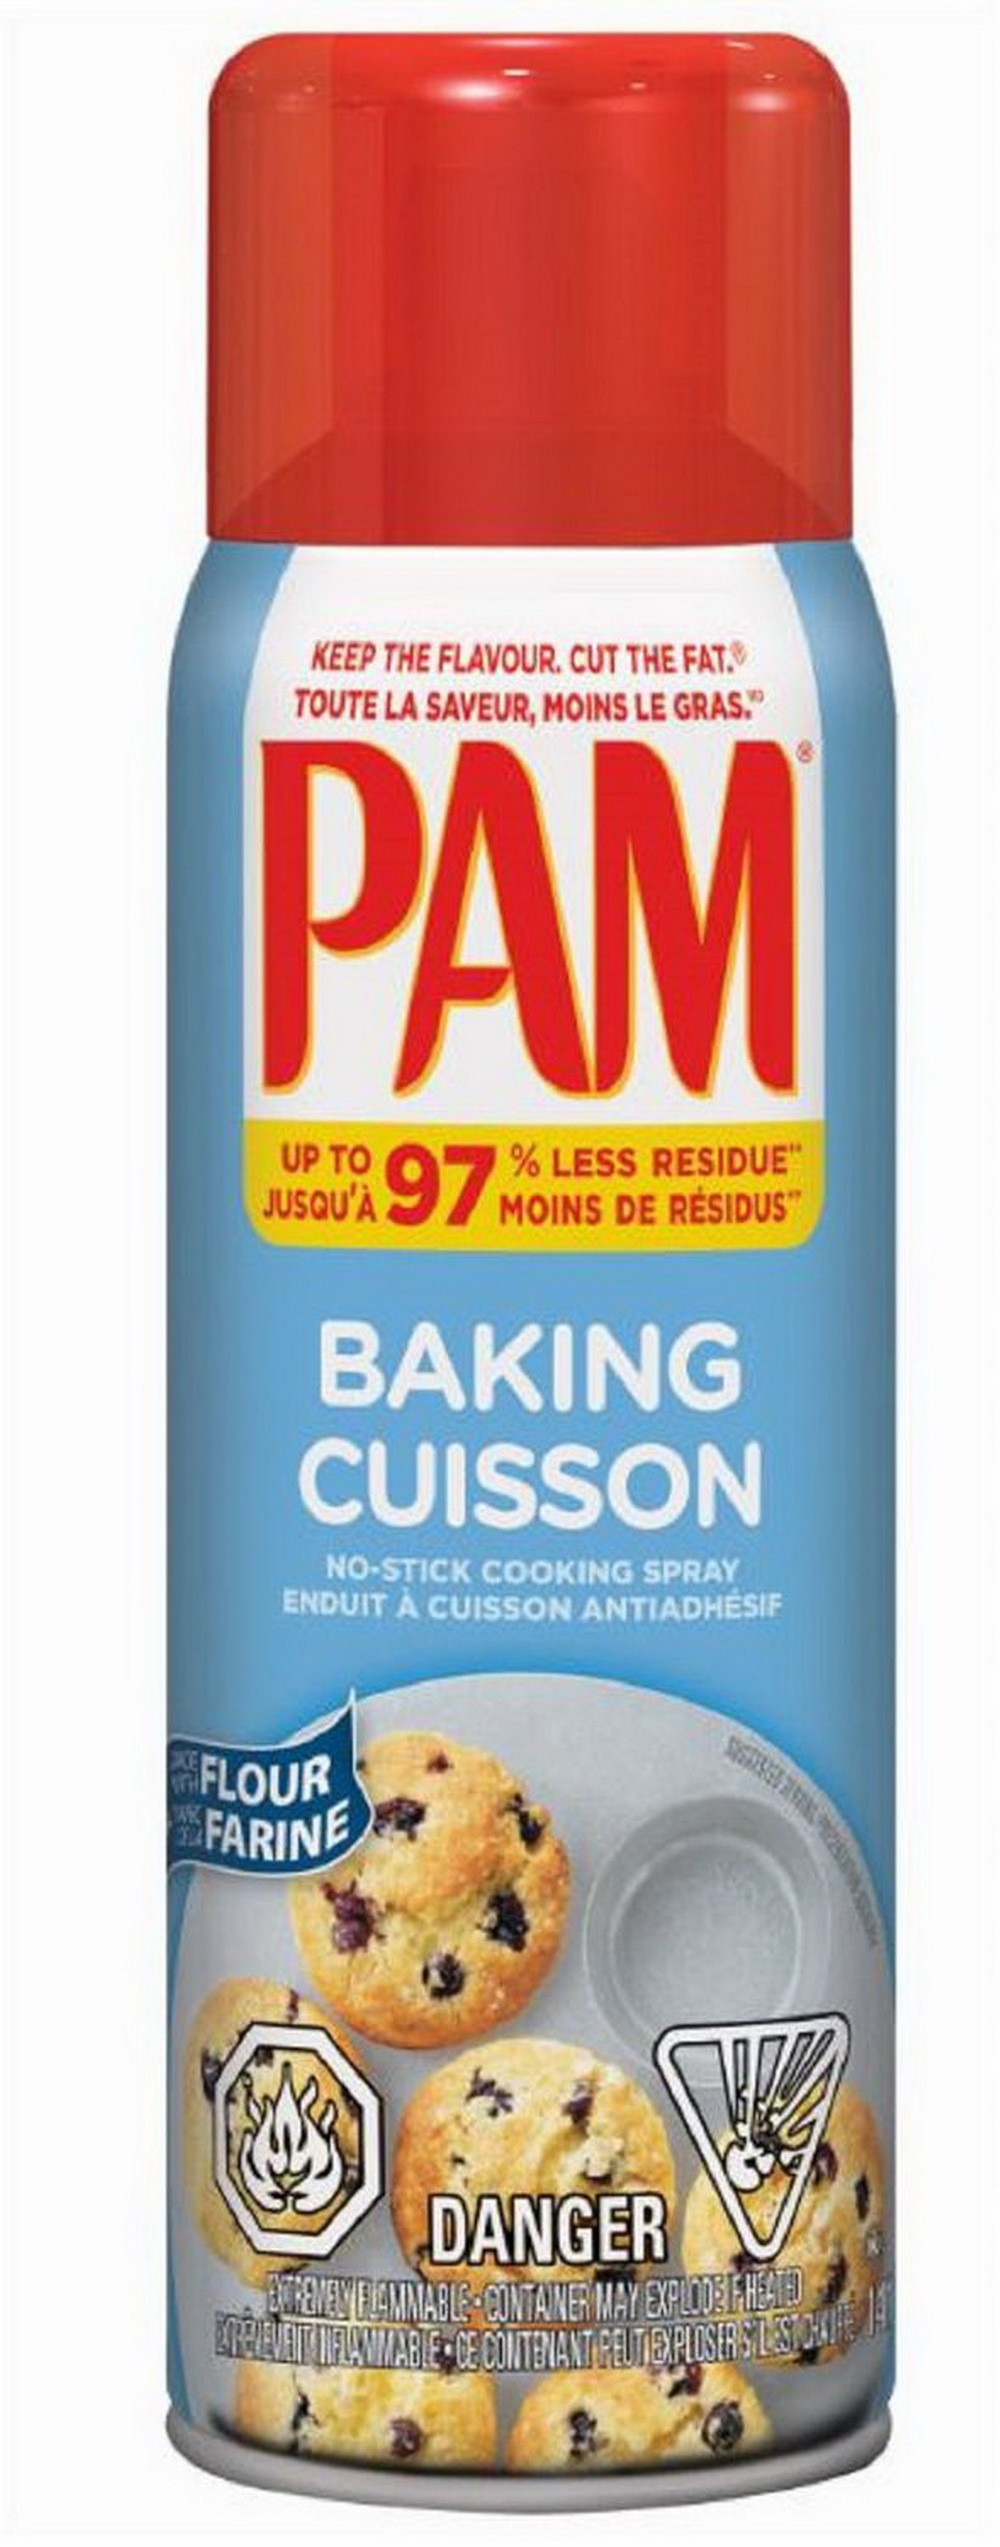 Achetez Spray de cuisson Pam, cuisson, 5 oz, 2pk chez Ubuy Maroc